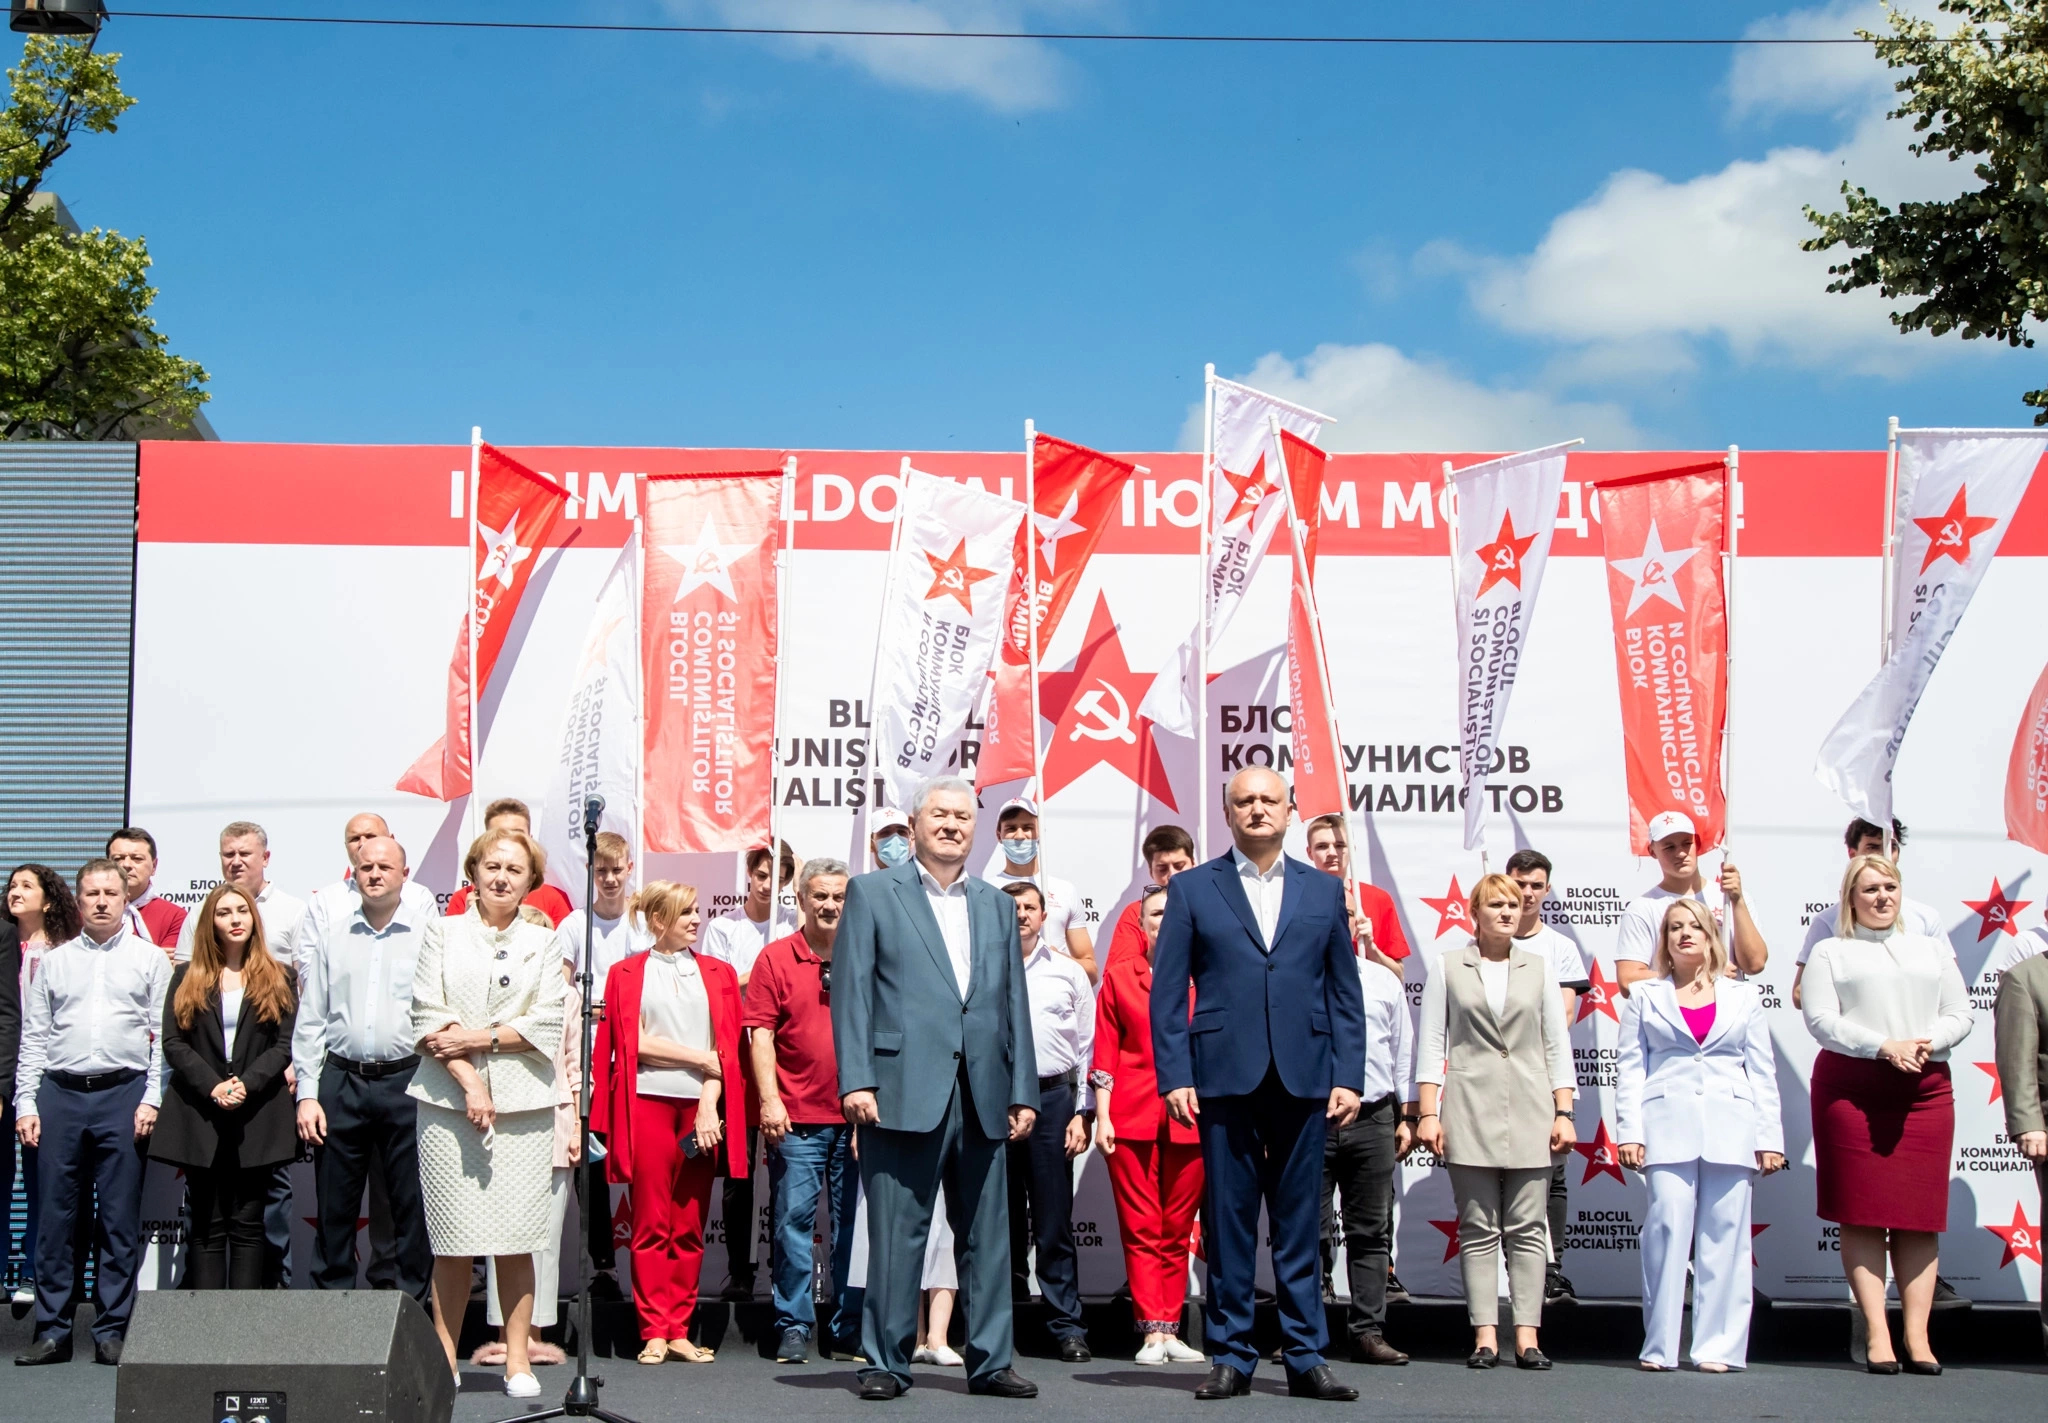 Aproape 20 de mii de cetățeni participă la marșul “Iubim Moldova”